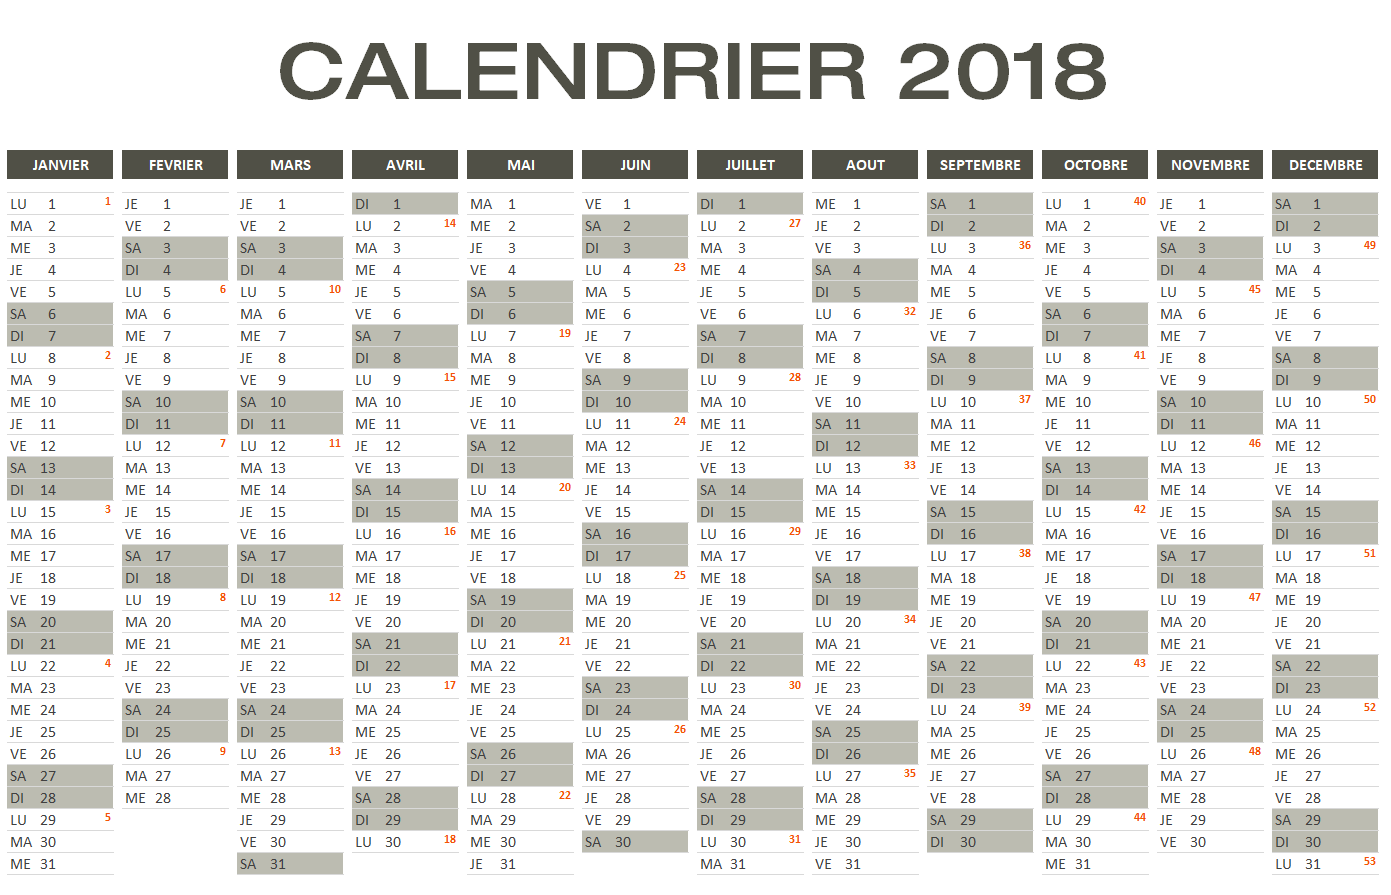 Calendrier 2018 avec numéros de semaine